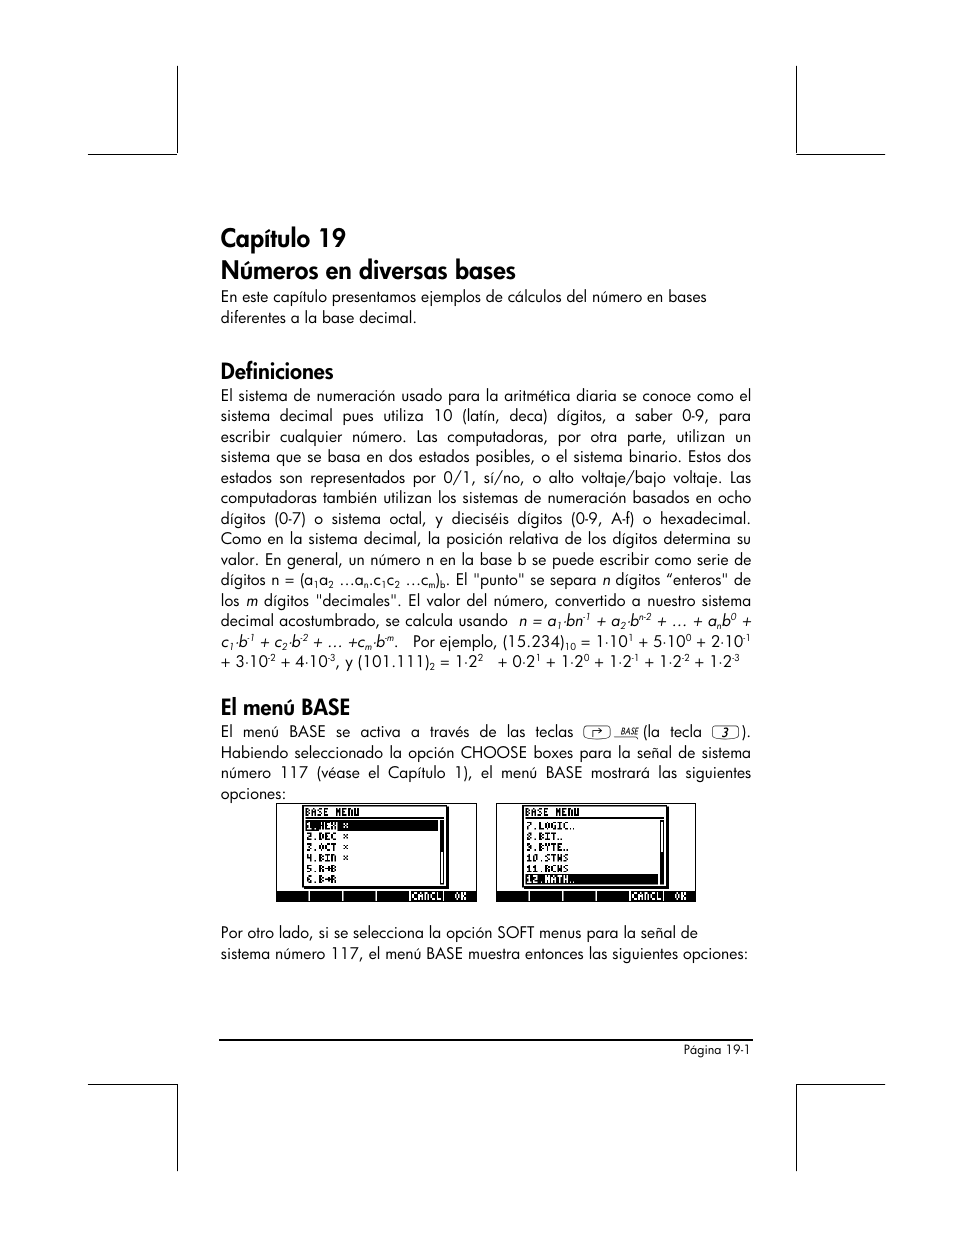 Capitulo 19 numeros en diversas bases, Definiciones, El menu base | HP  48gII Graphing Calculator User Manual | Page 655 / 892 | Original mode